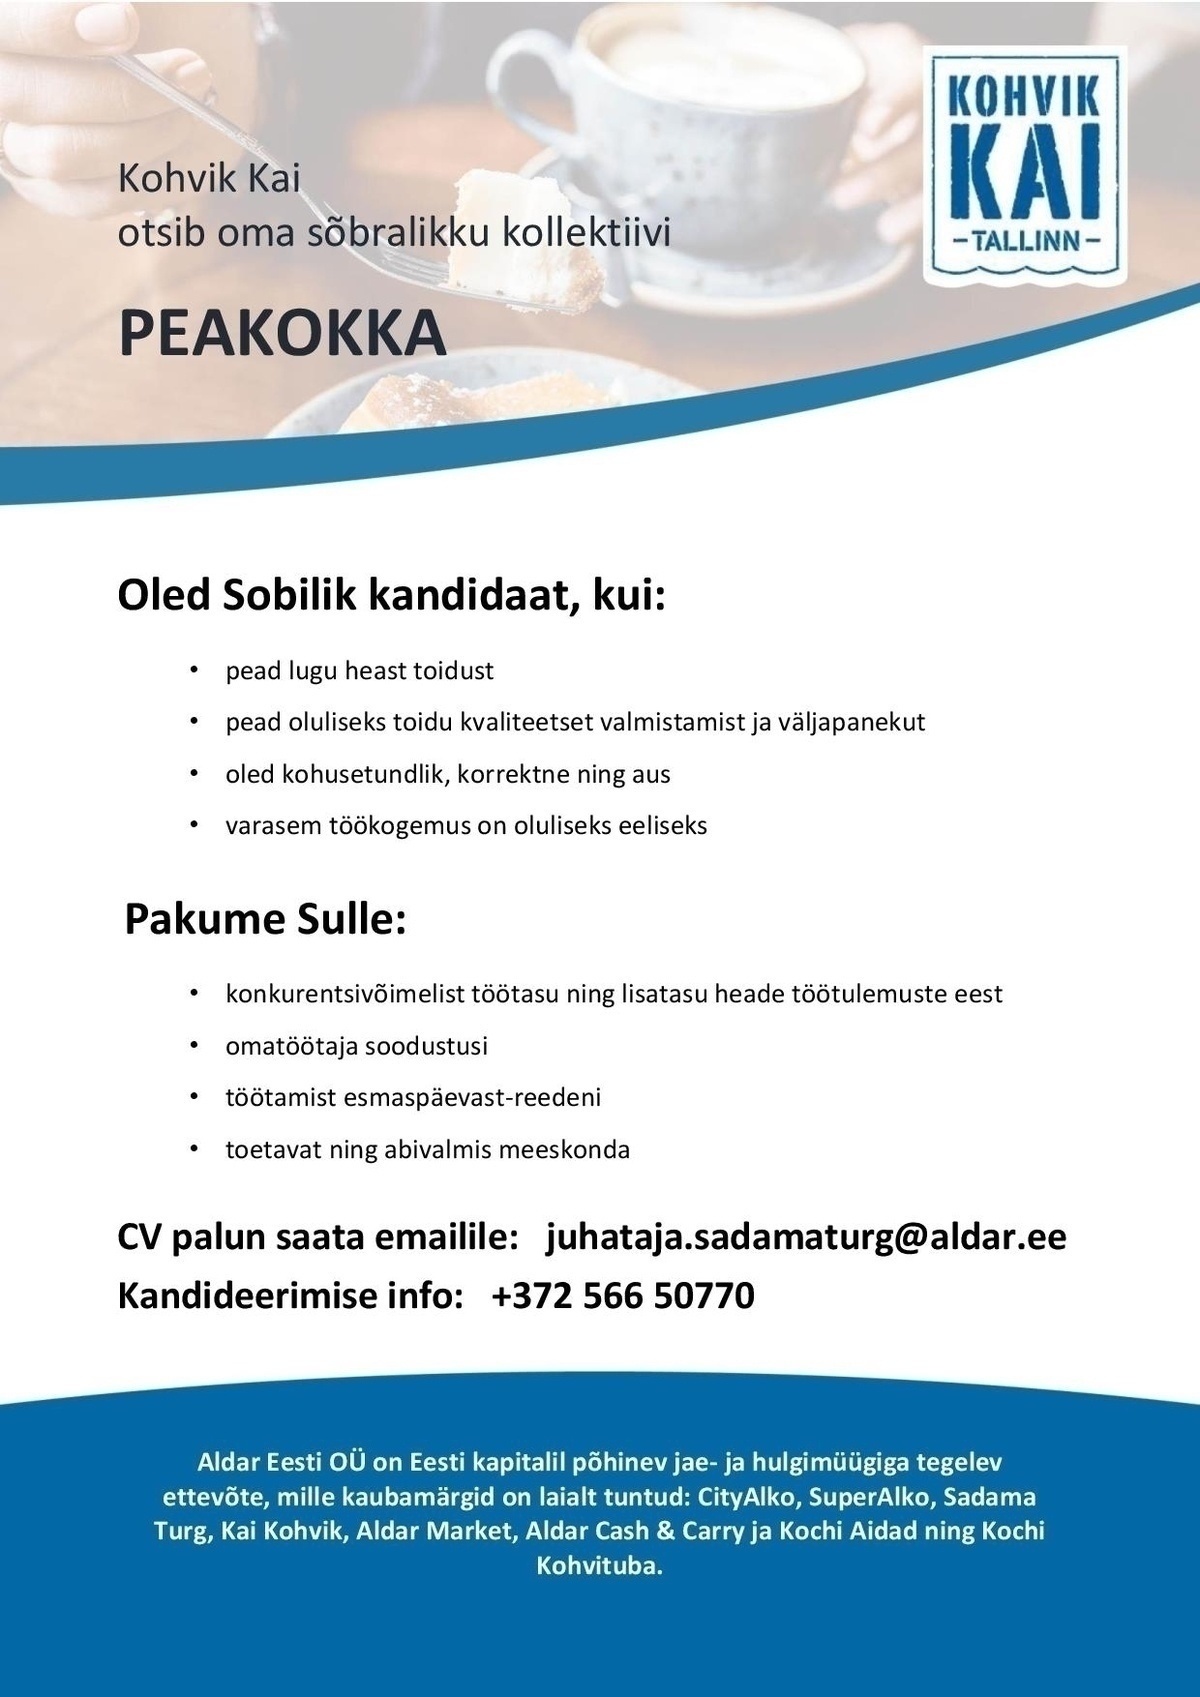 OÜ Aldar Eesti Peakokk Kai Kohvikus